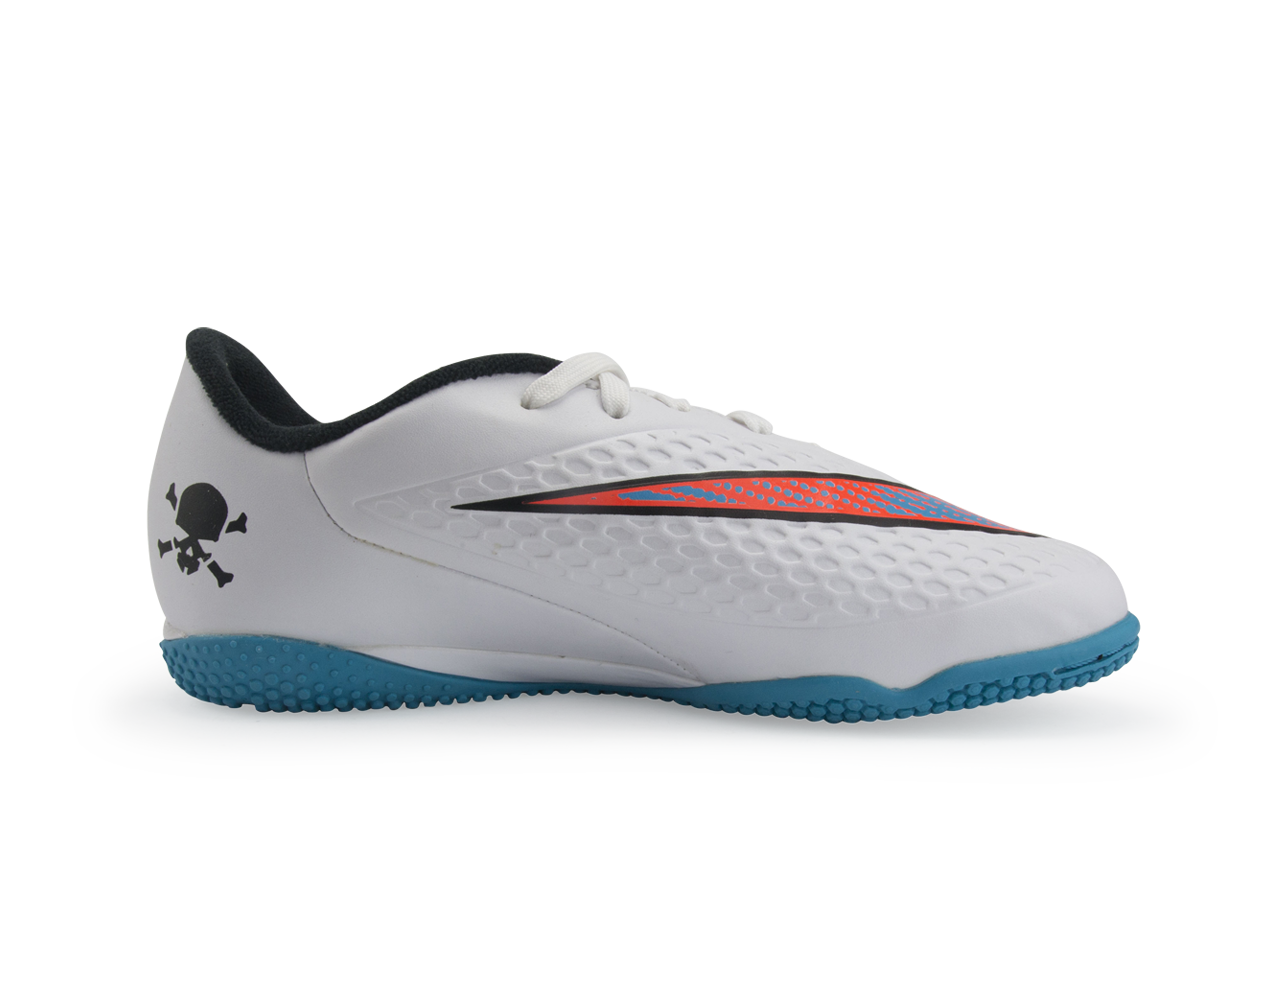 Nike Kids Hypervenom Phelon Indoor Soccer Shoes White/Blue Lagoon/Total Crimson